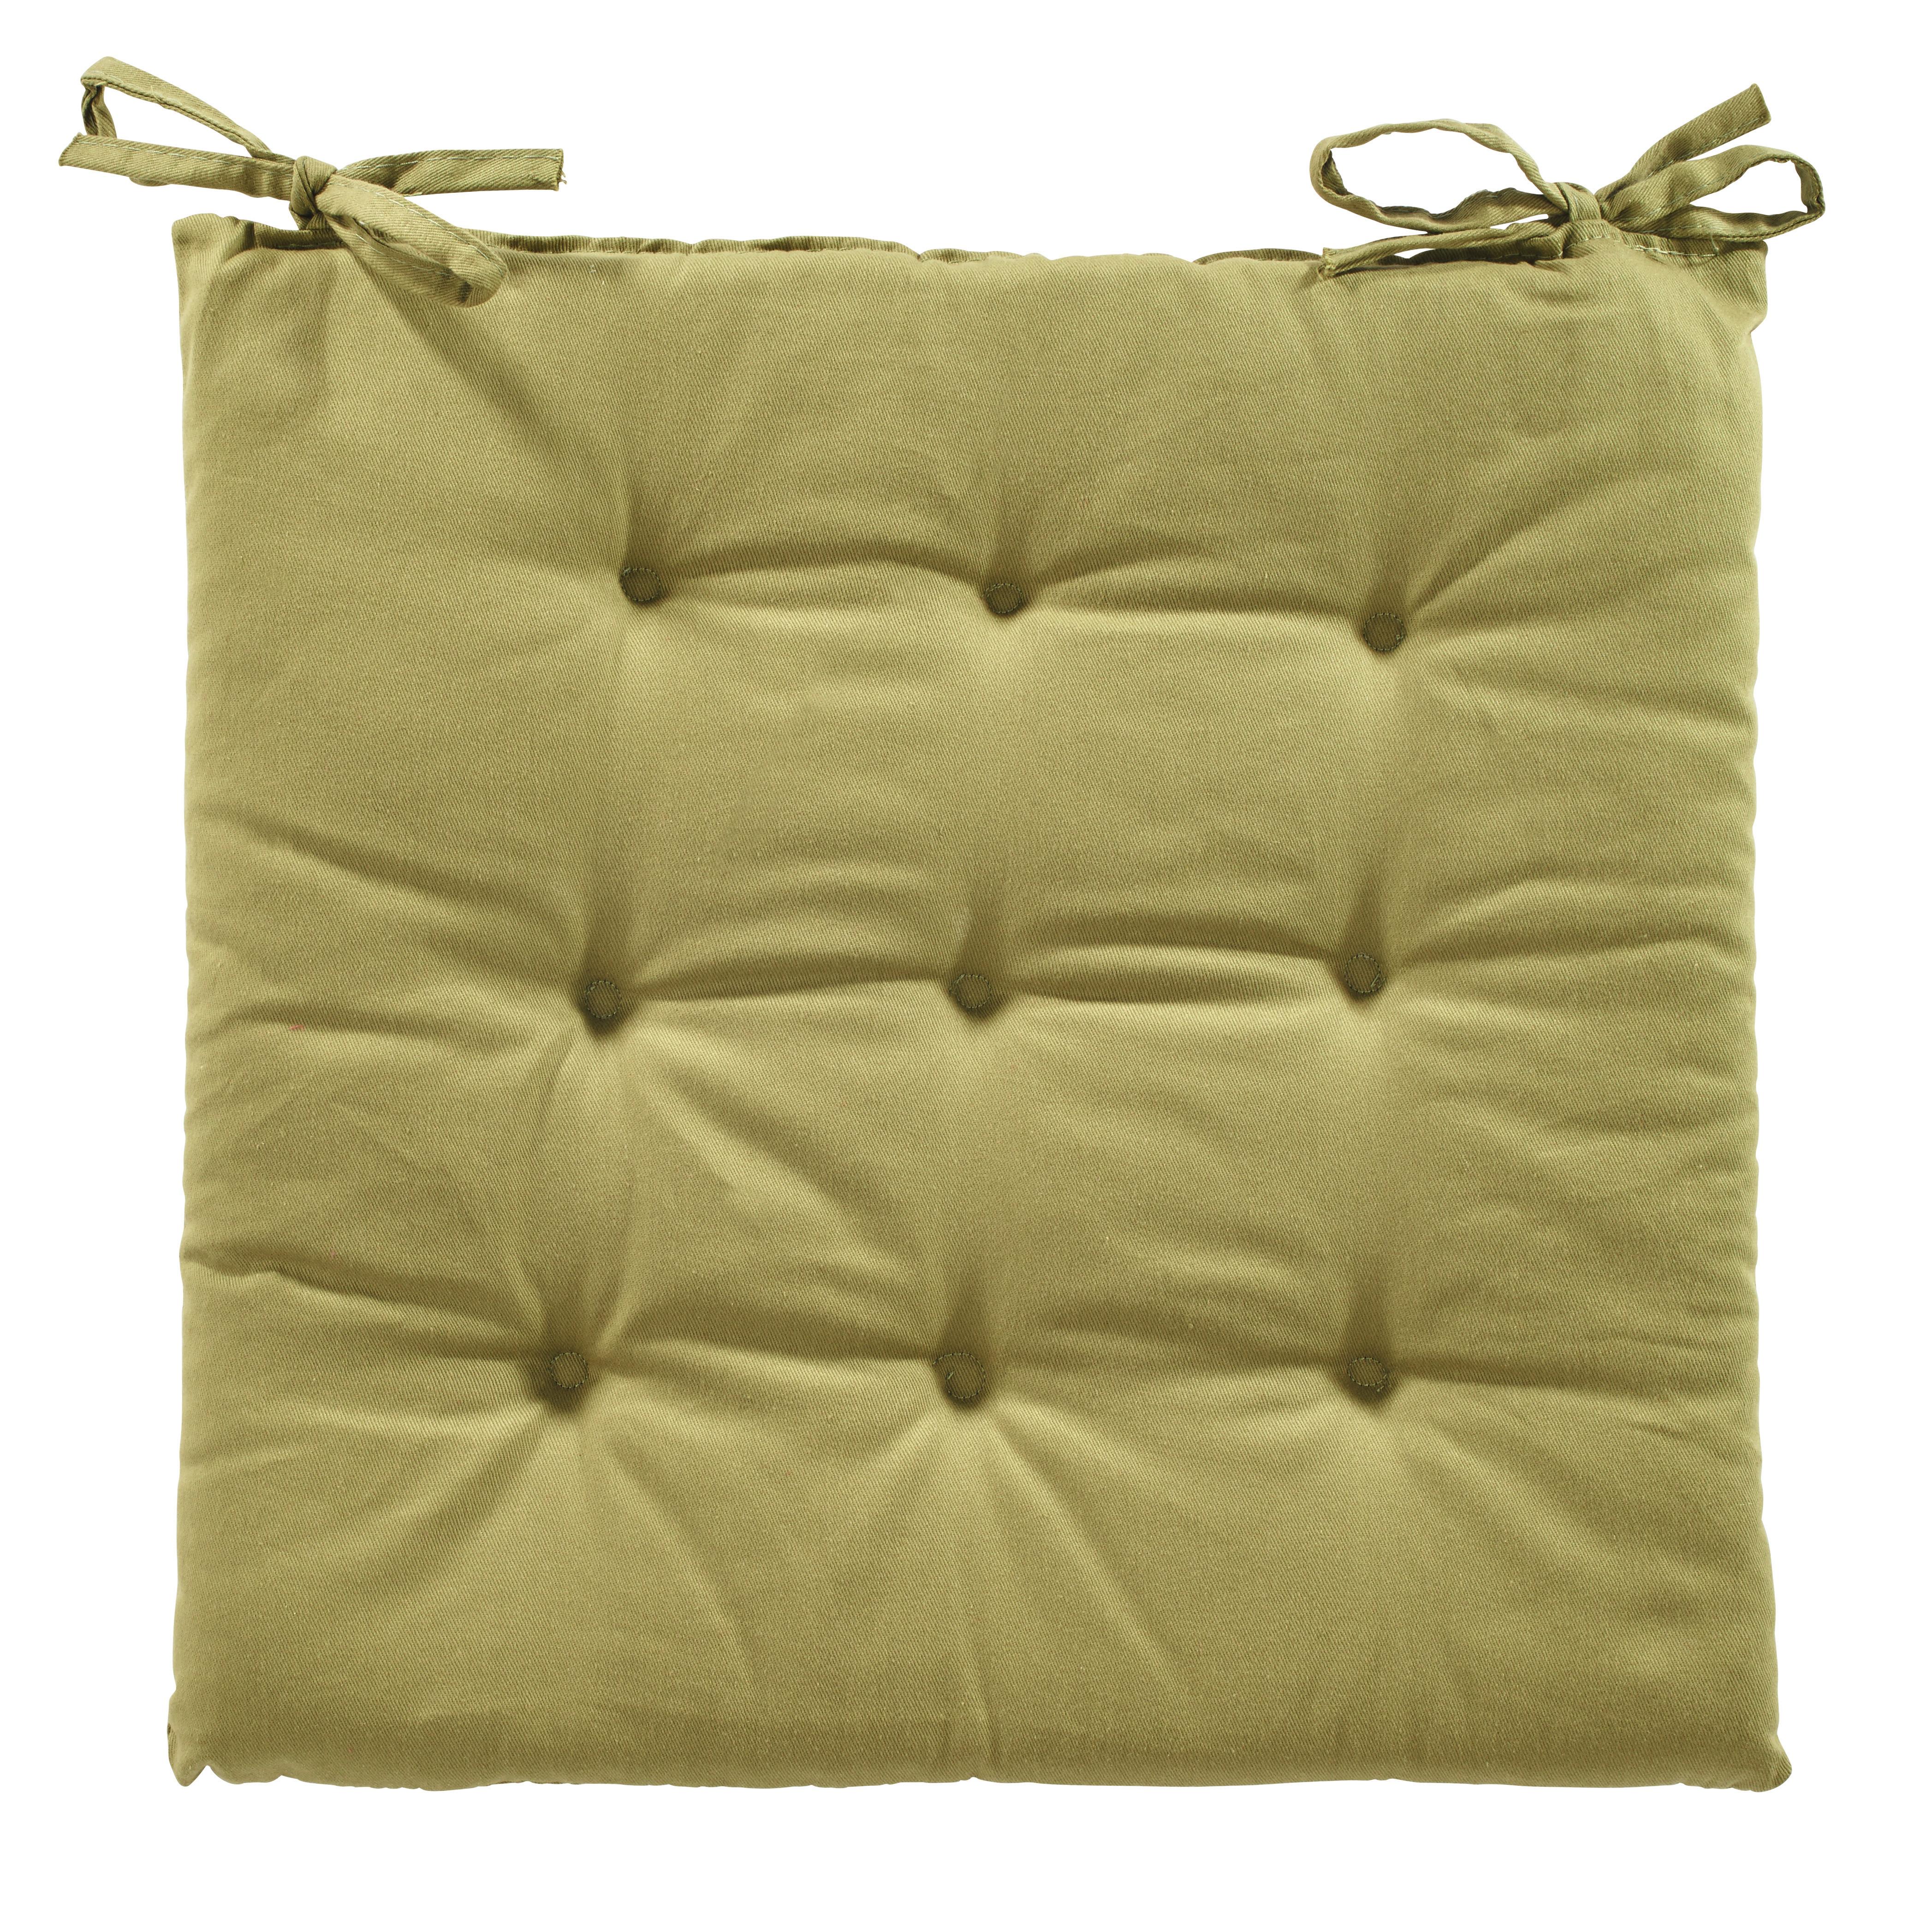 Poduška Na Sedenie Lola,  40/40/2cm, Zelená - zelená, textil (40/40/2cm) - Based